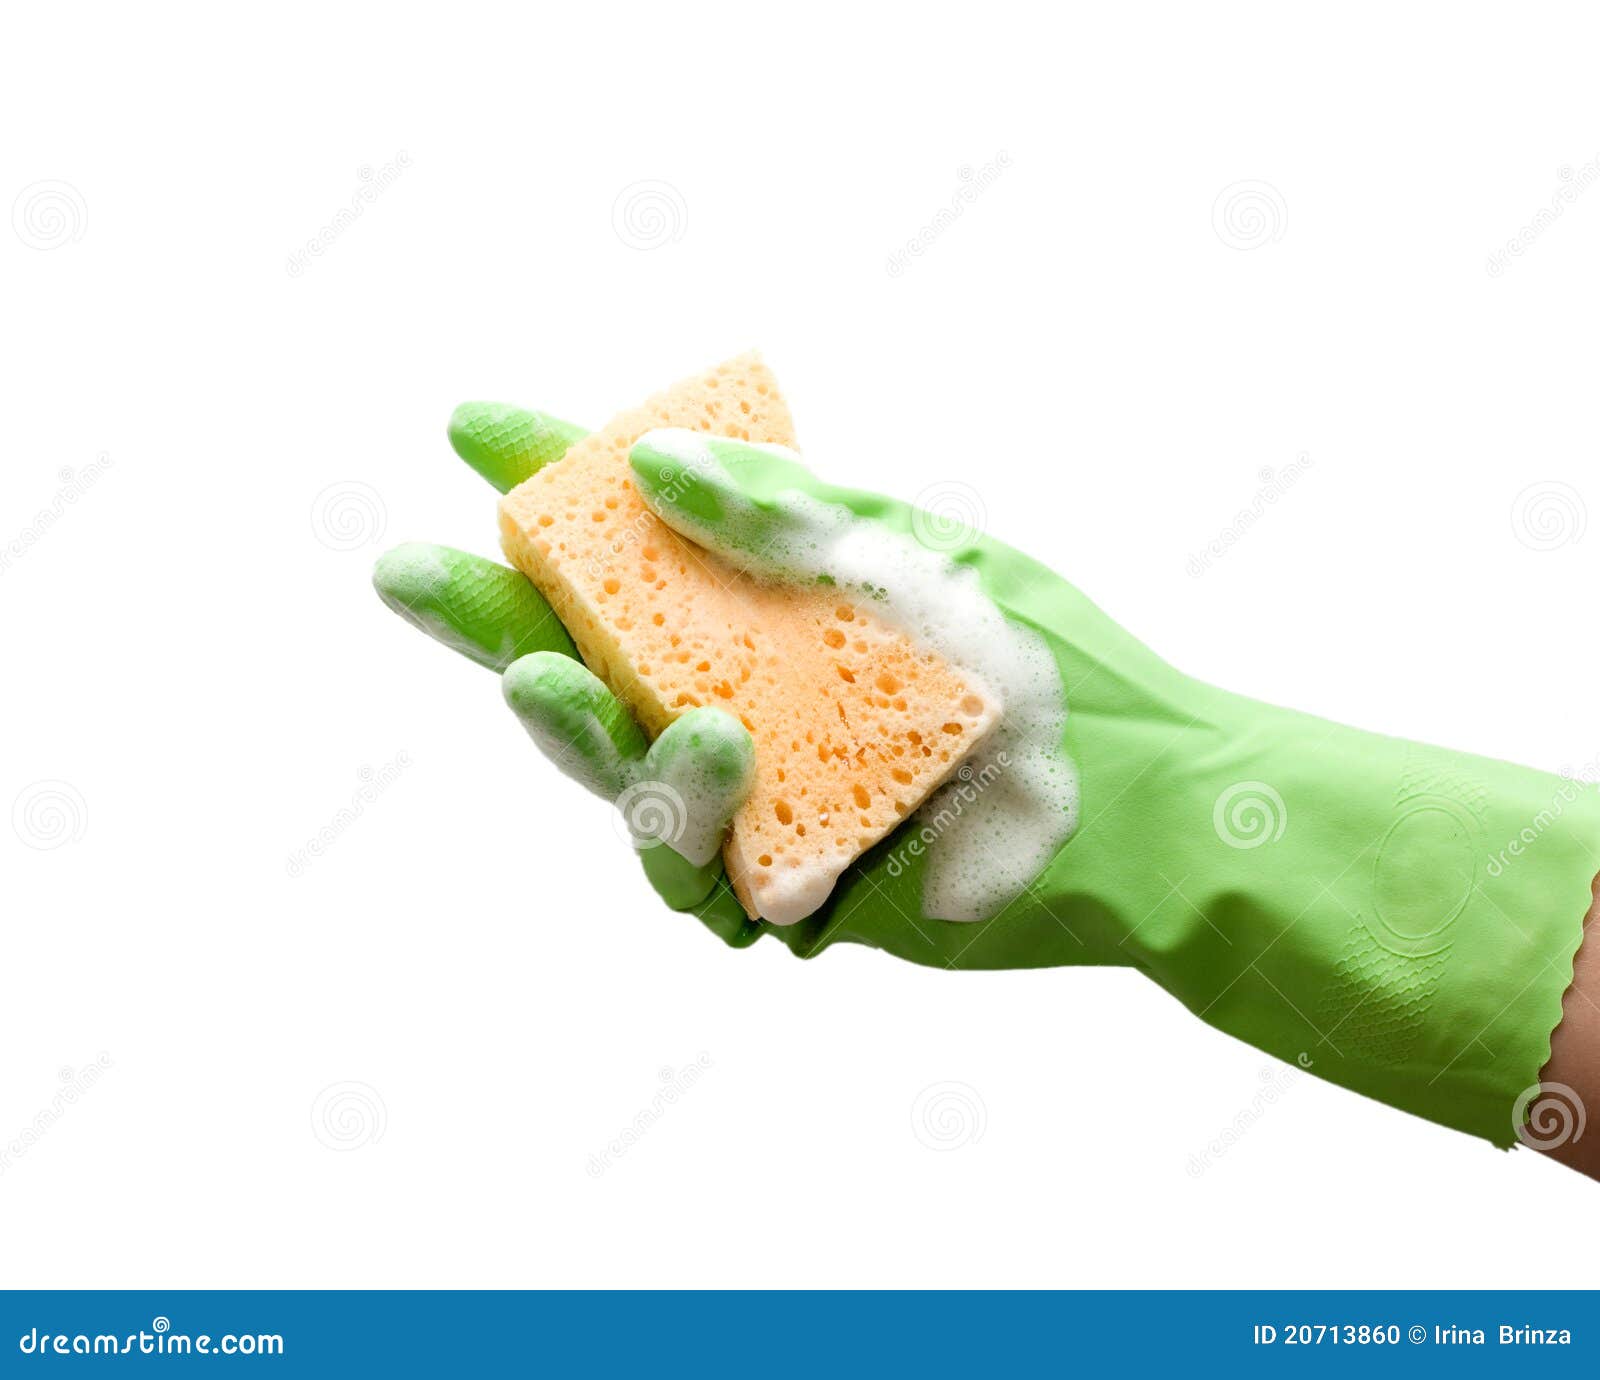 foamy cleaning sponge